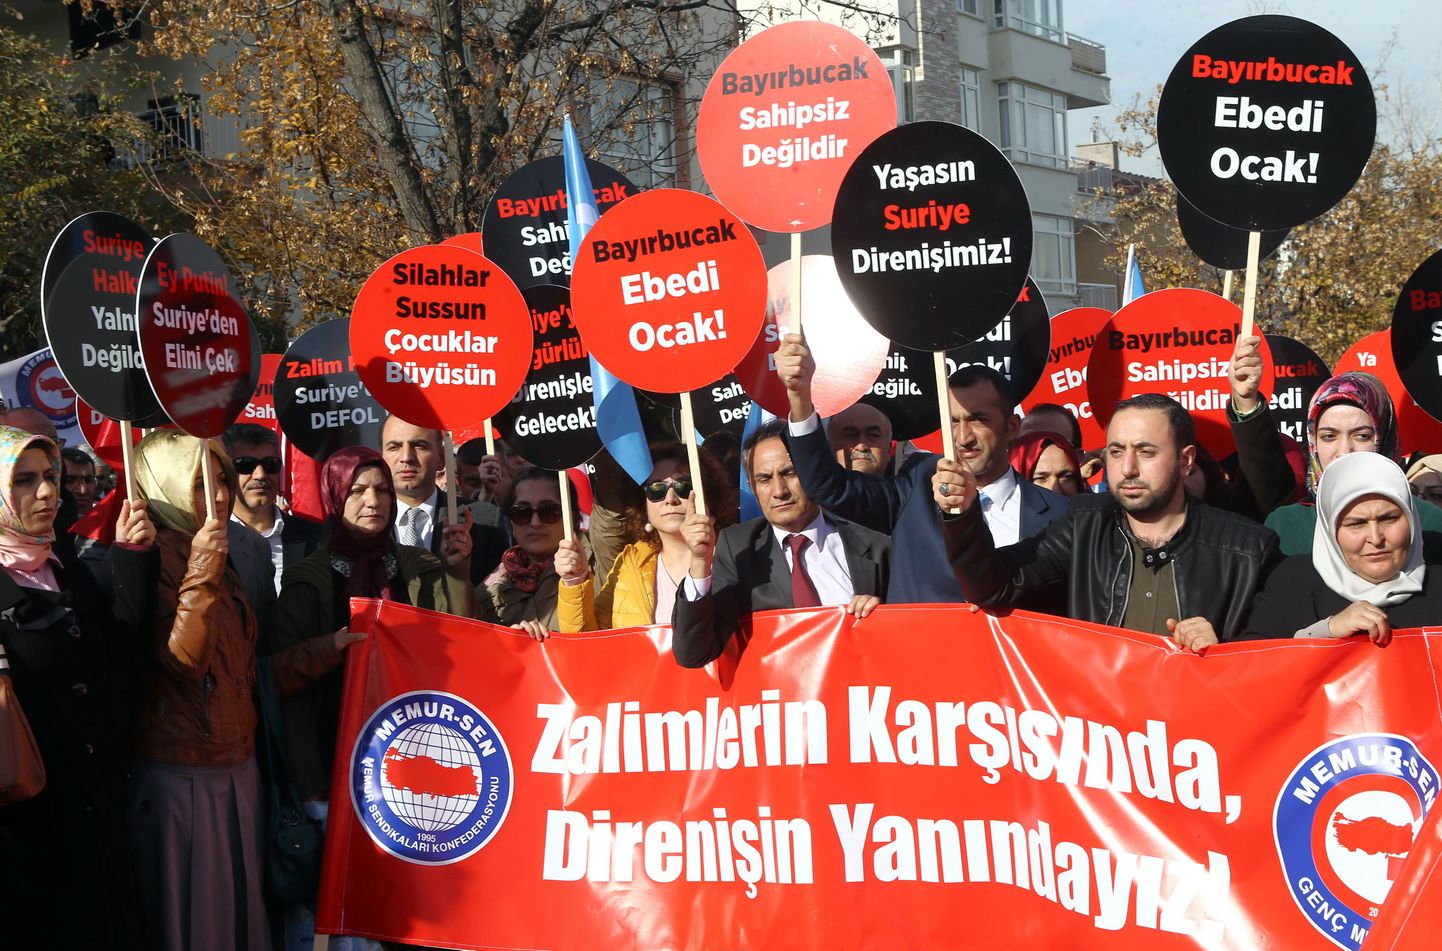 Türklastest meeleavaldajad täna Ankara Vene saatkonna ees protestimas.